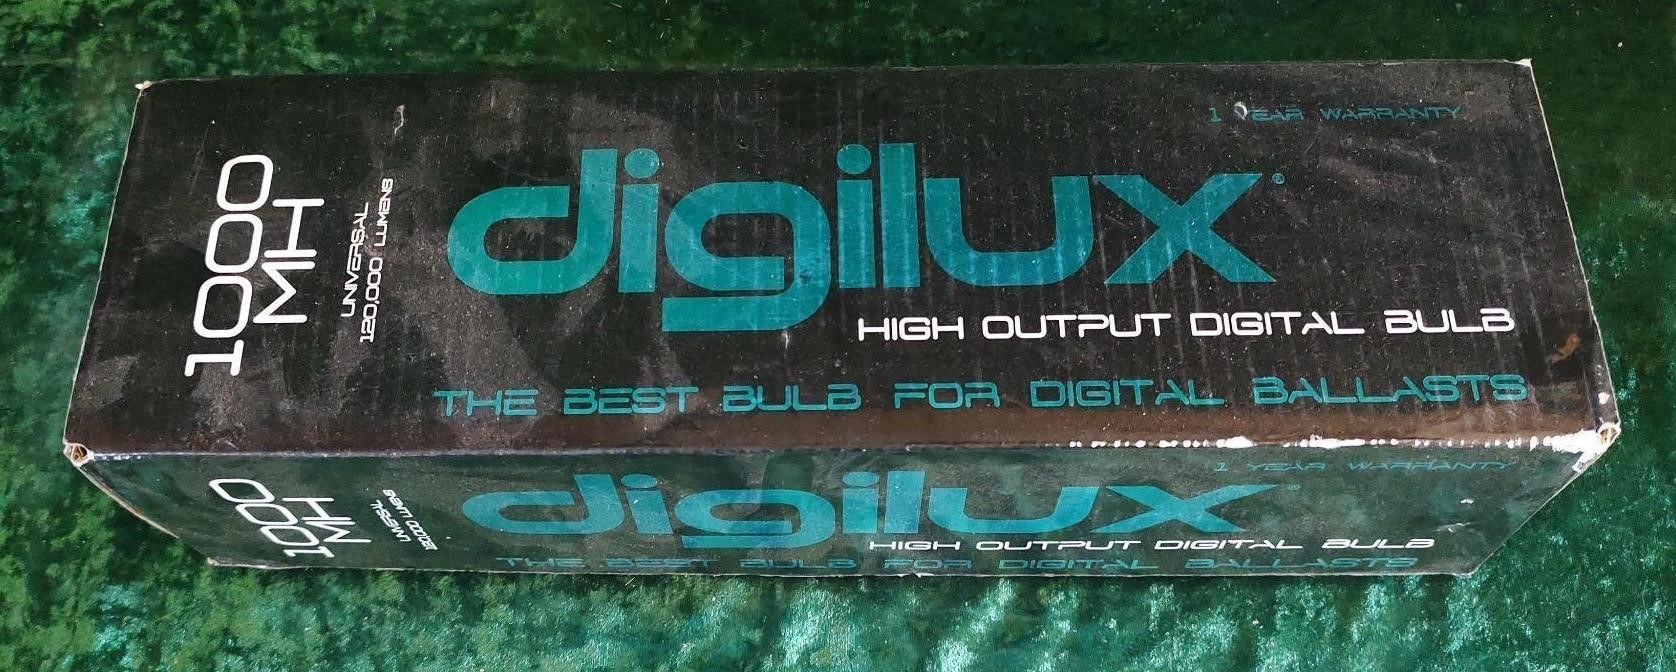 Digilux high output digital bulb 120,000 lumens